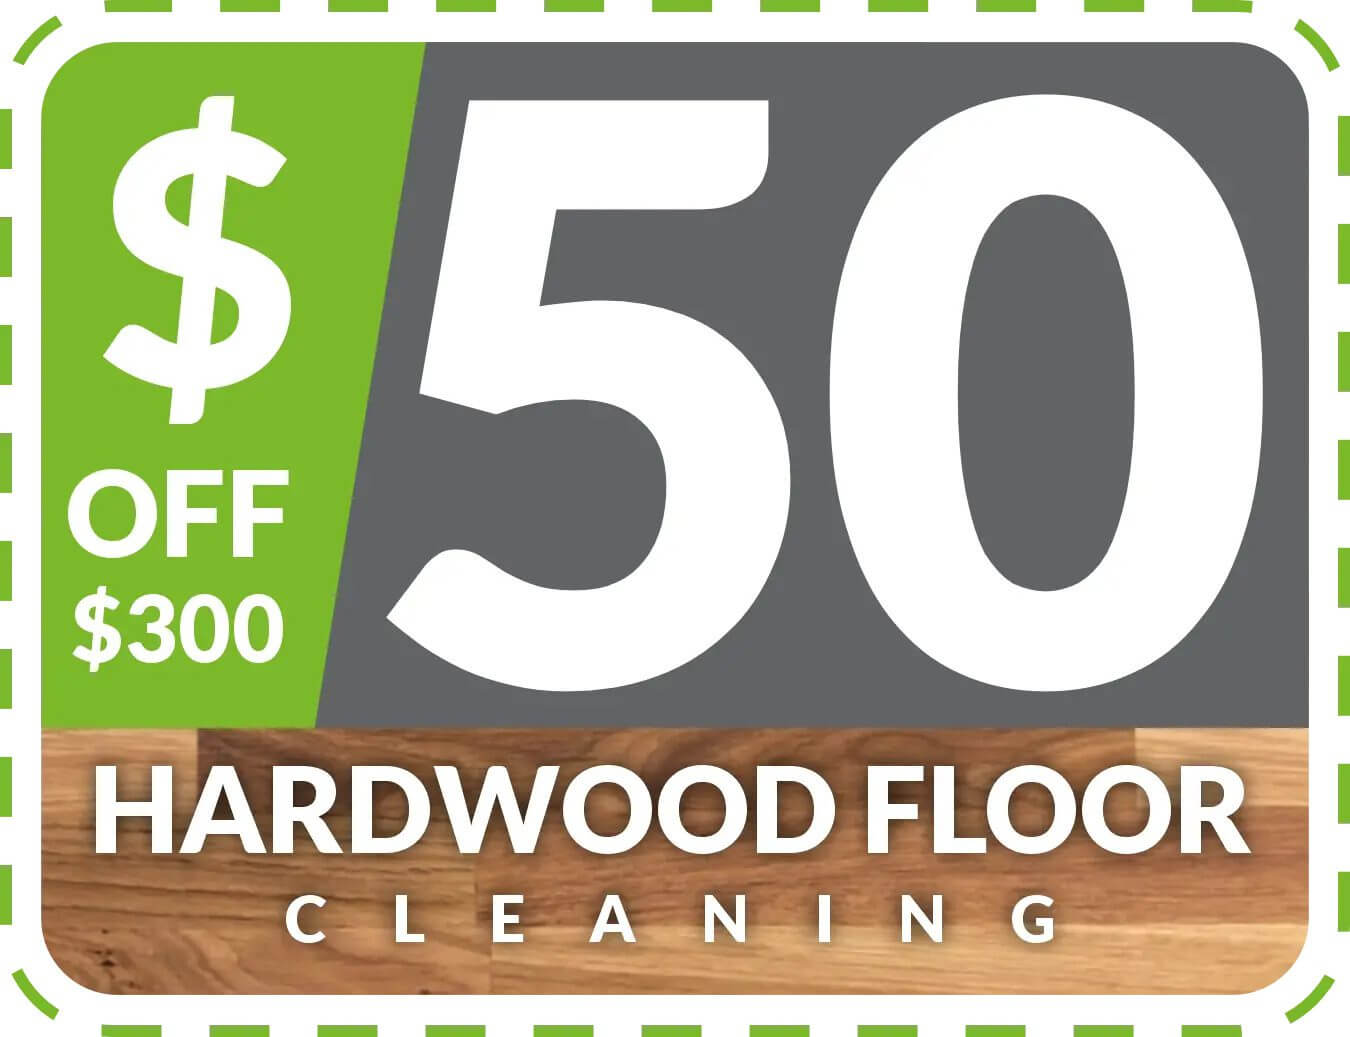 Hardwood Floor Cleaning Discount